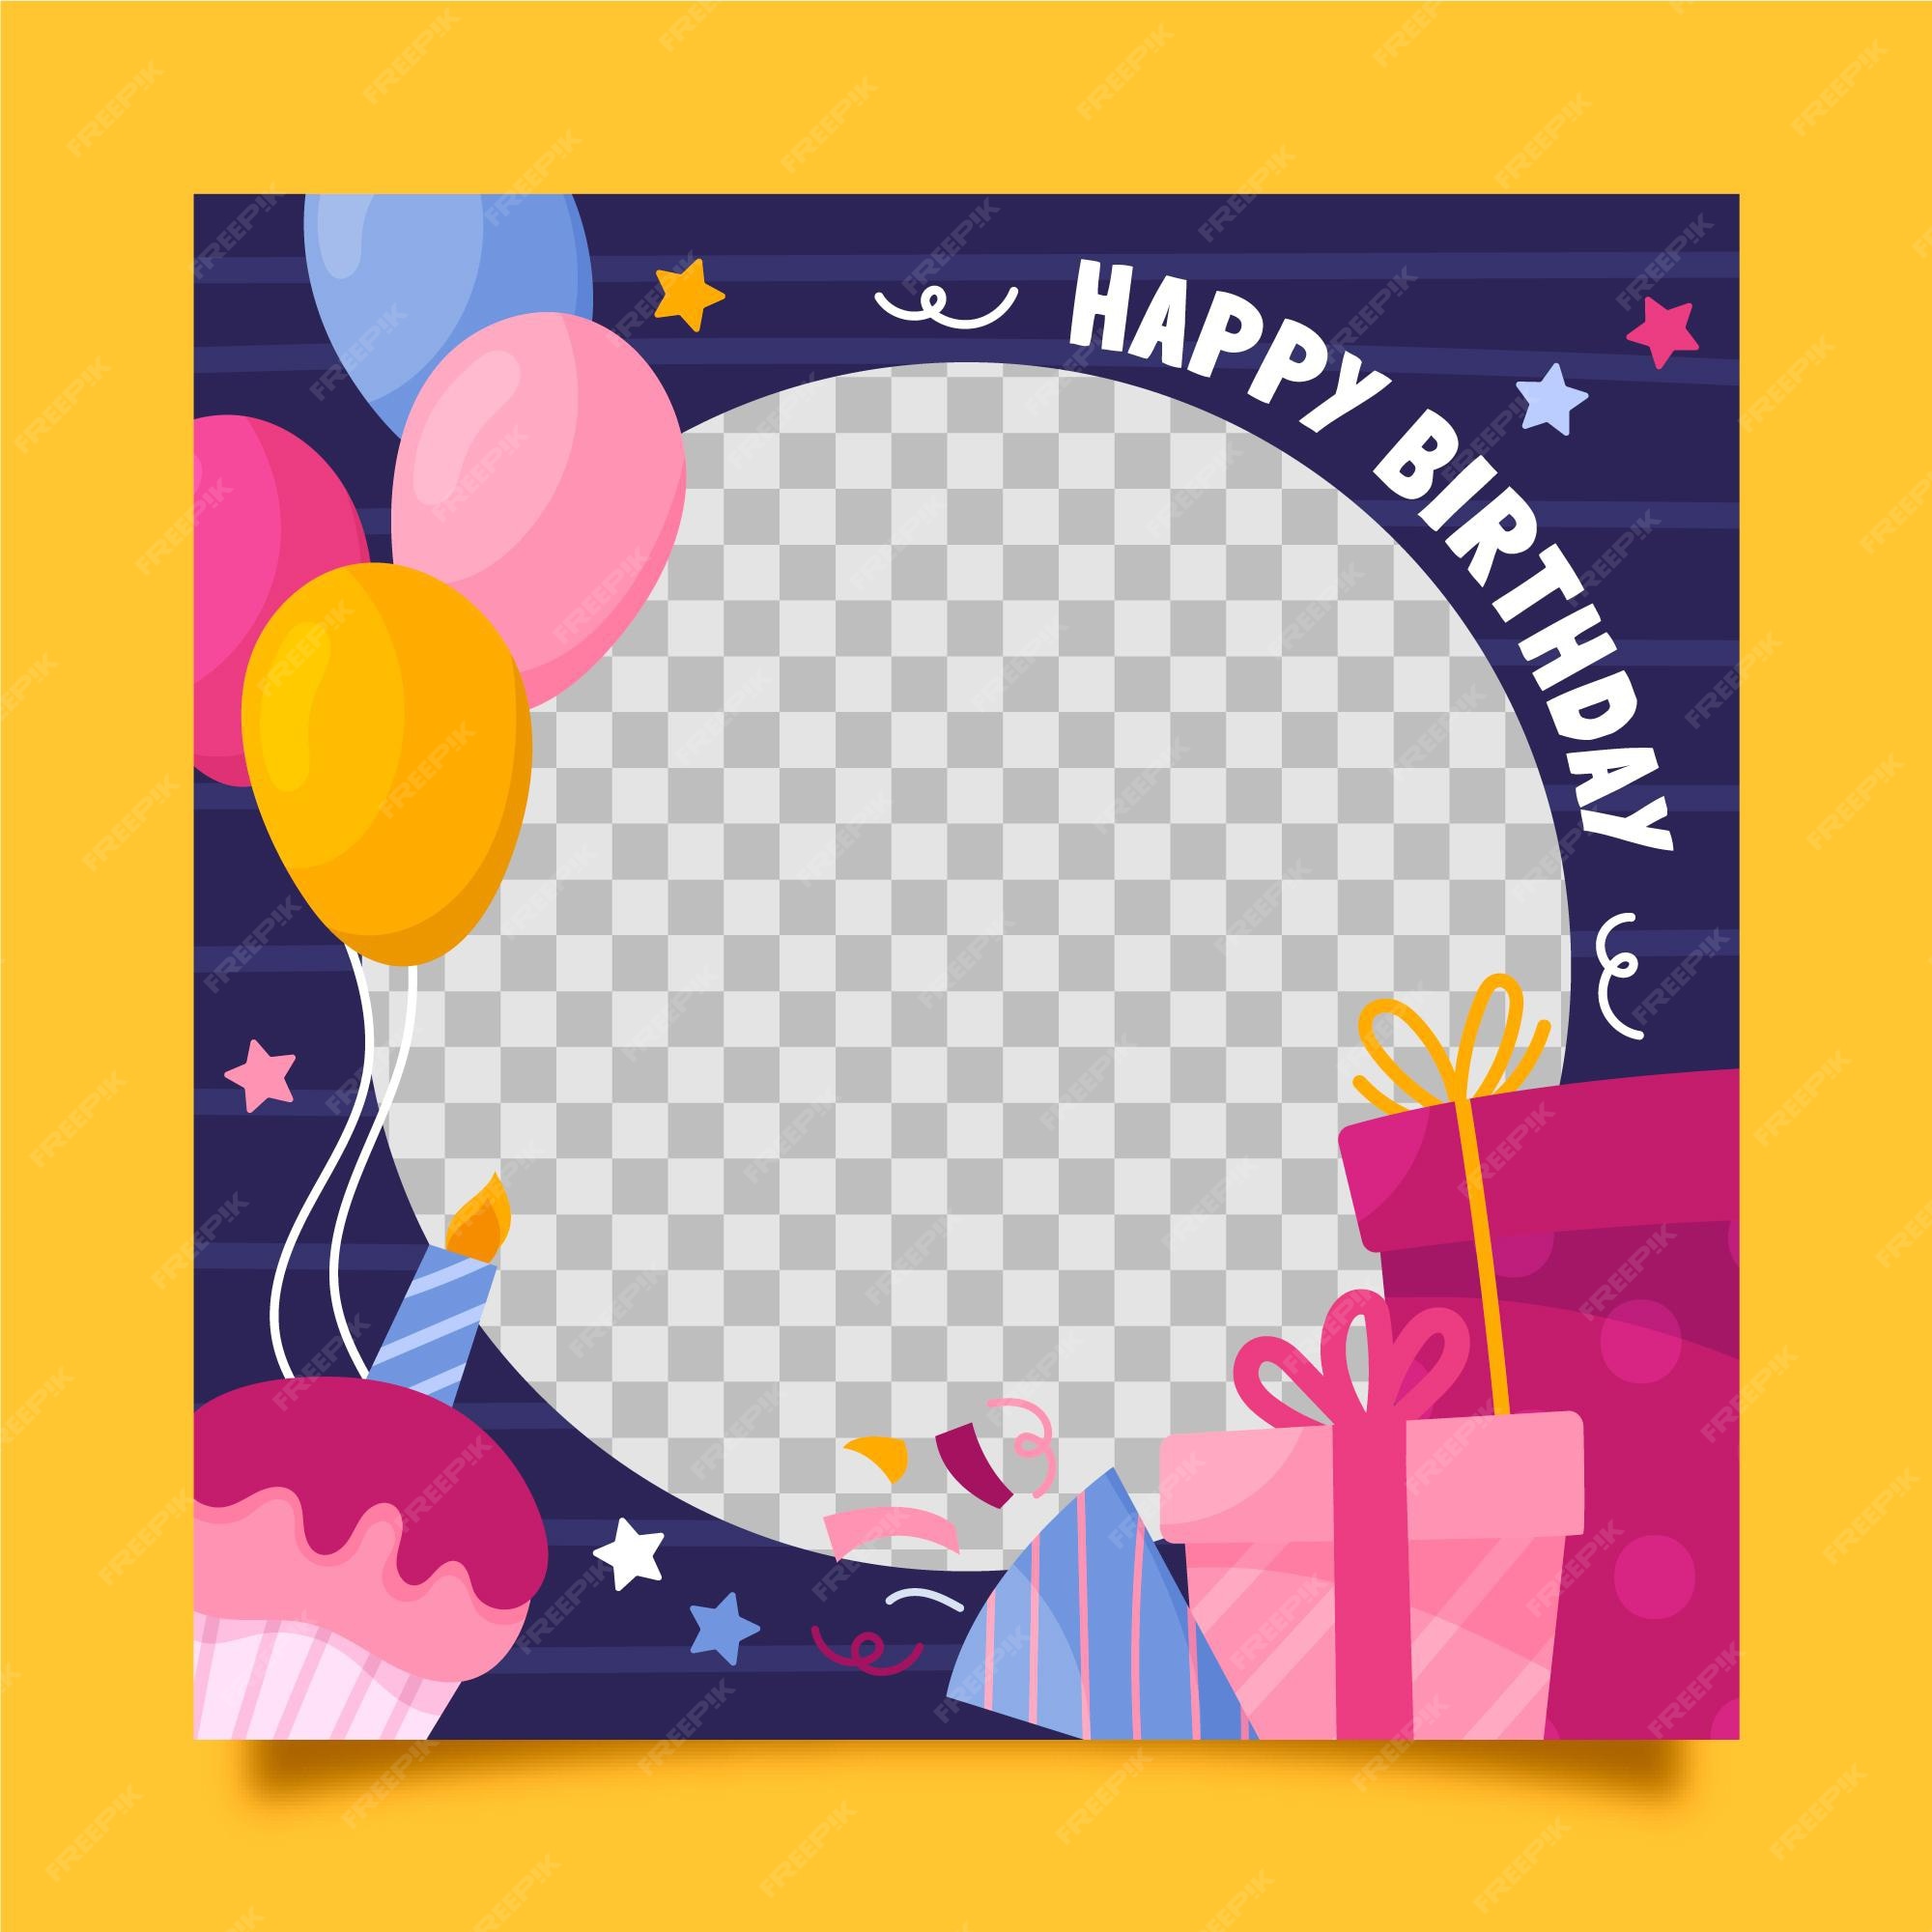 Khung sinh nhật Facebook: Tạo một trải nghiệm tuyệt vời cho người đón sinh nhật của bạn bằng cách sử dụng những khung ảnh sinh nhật trên Facebook. Đón xem các hình ảnh liên quan để tìm kiếm khung ảnh sinh nhật phù hợp và đẹp nhất.